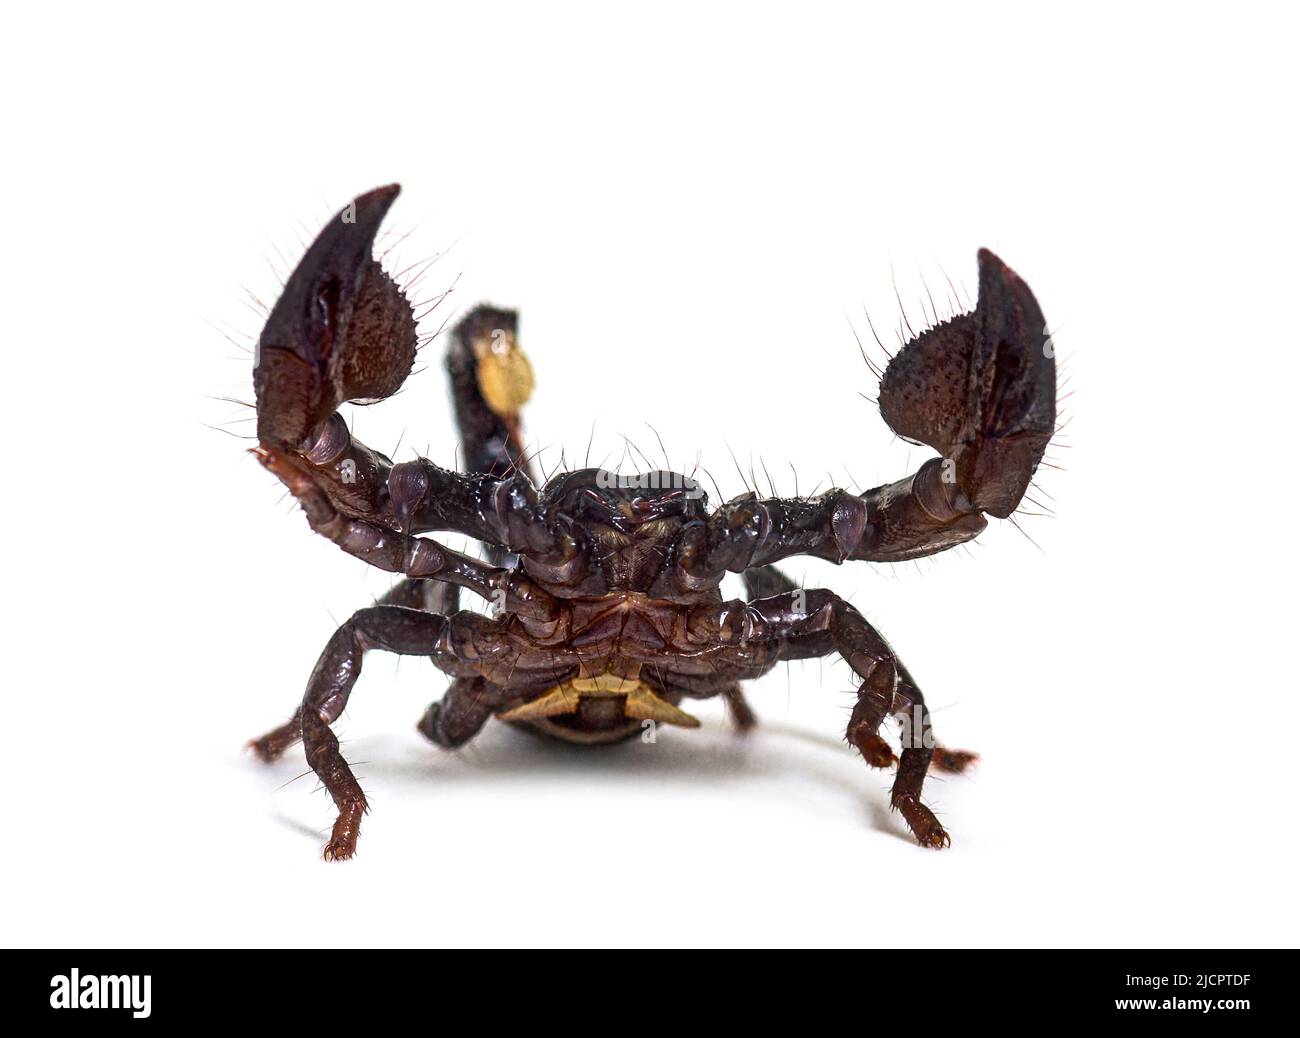 Scorpione Imperatore giovanile, impermeabile Pandino, isolato Foto Stock